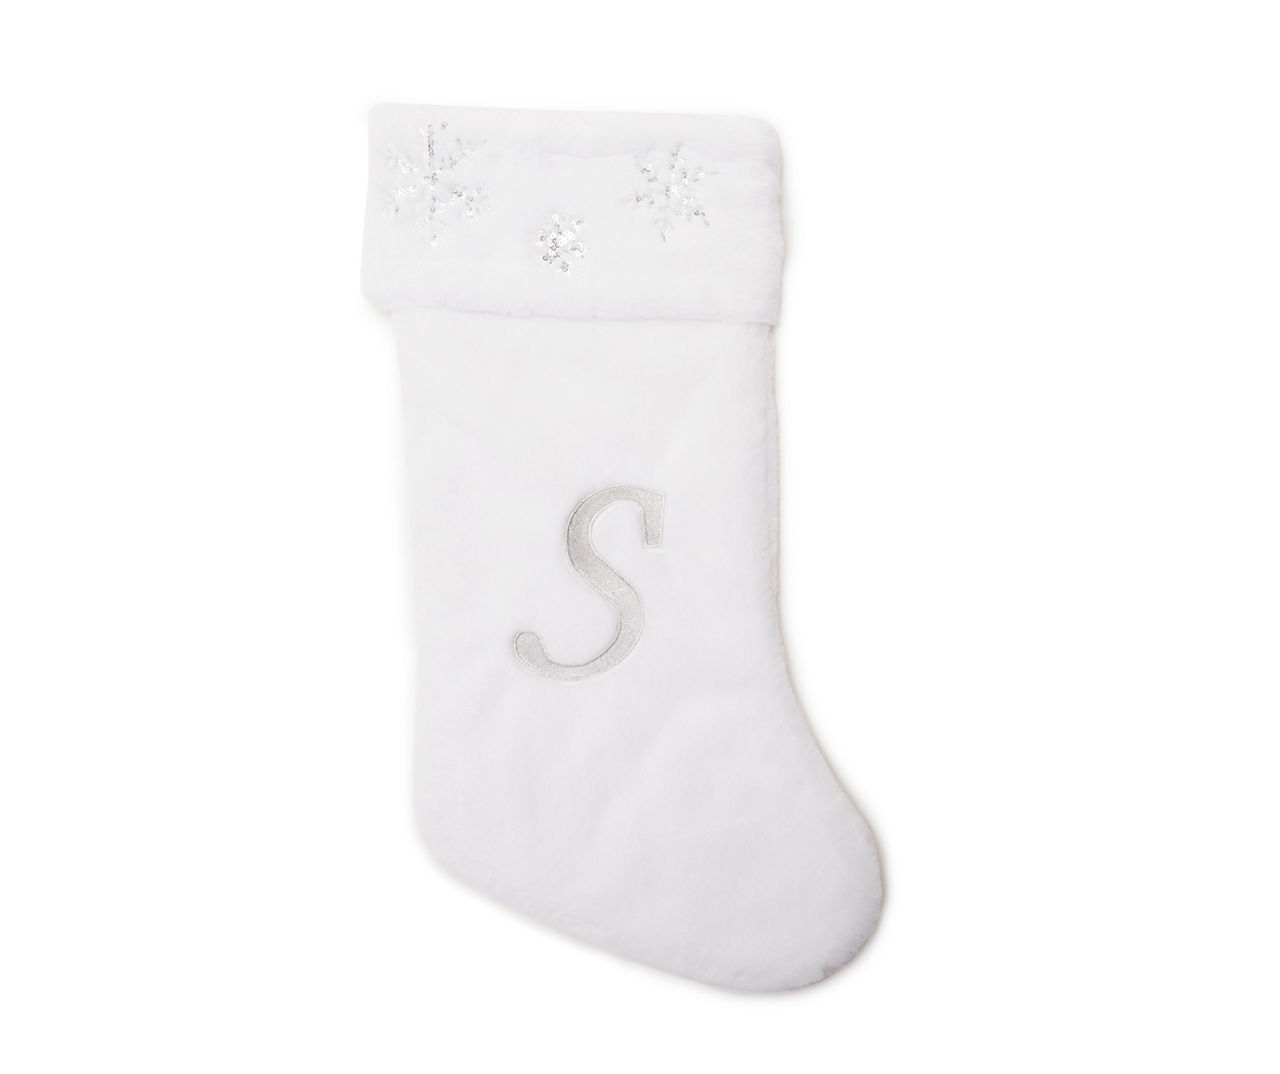 "S" Monogram White Faux Fur & Snowflake Stocking